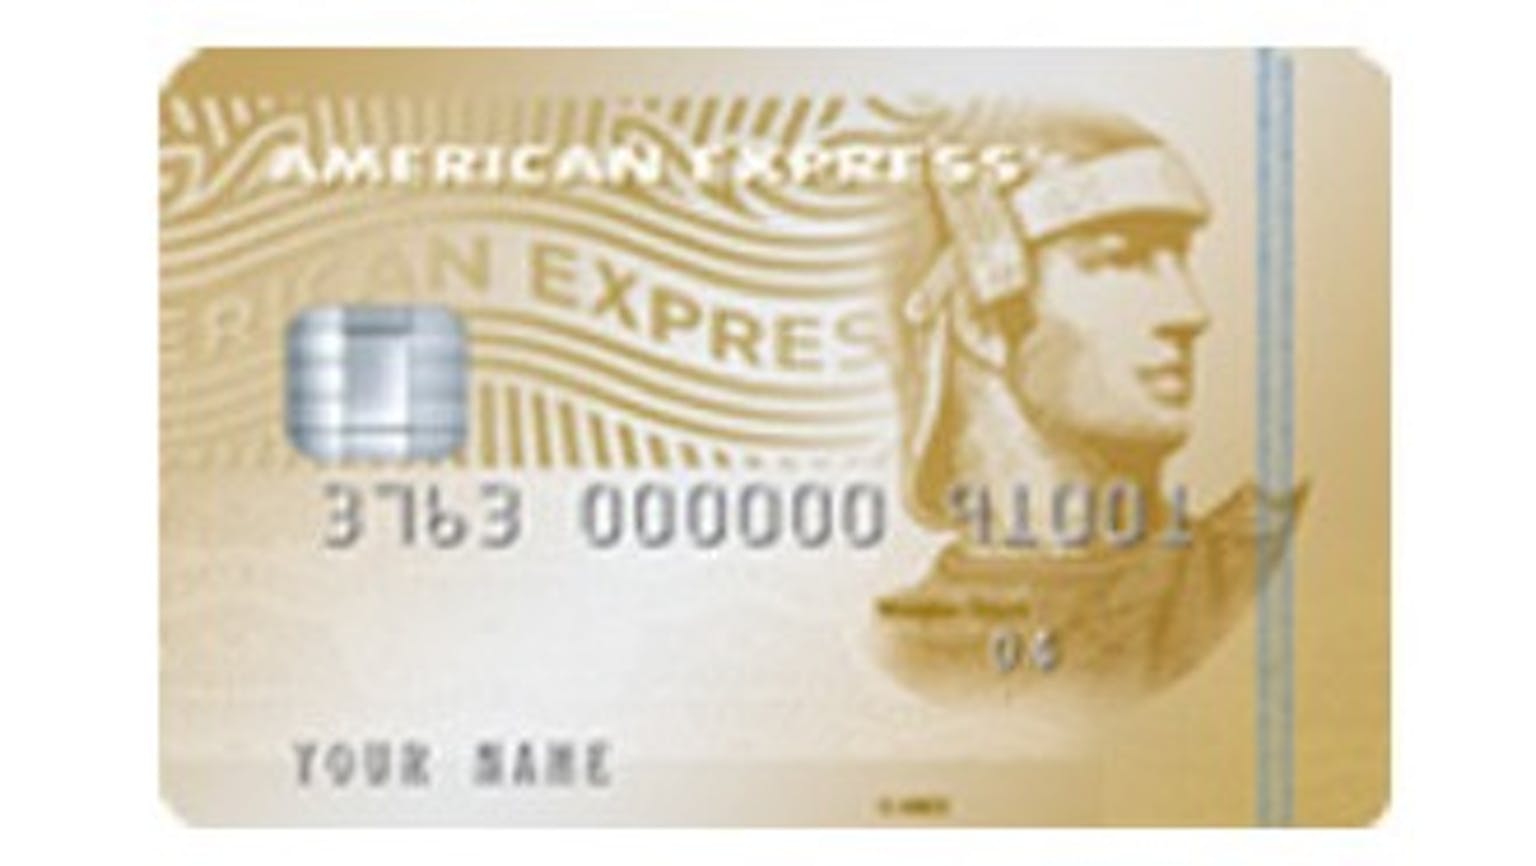 บัตรเครดิตอเมริกัน เอ็กซ์เพรส